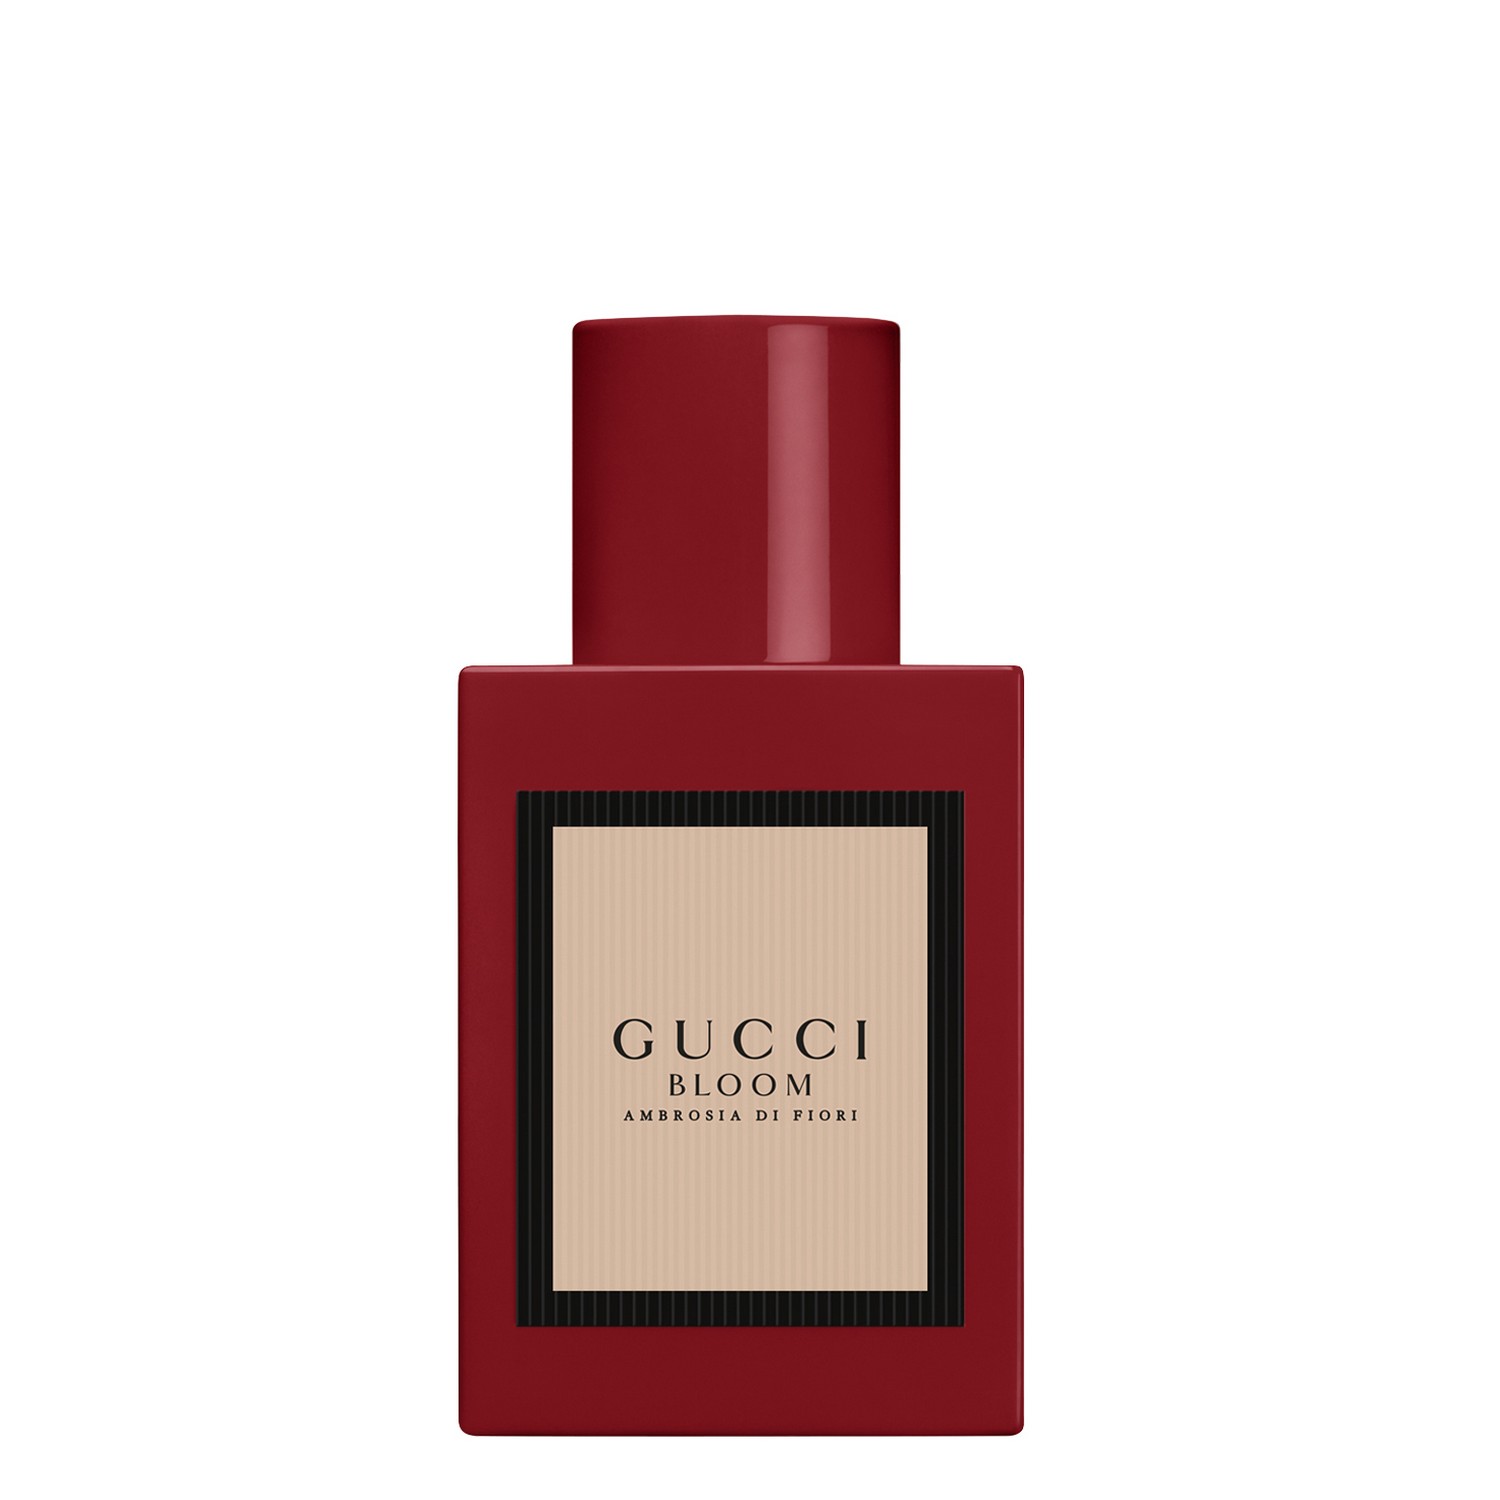 Gucci Bloom Ambrosia di Fiori Eau de Parfum 30ml